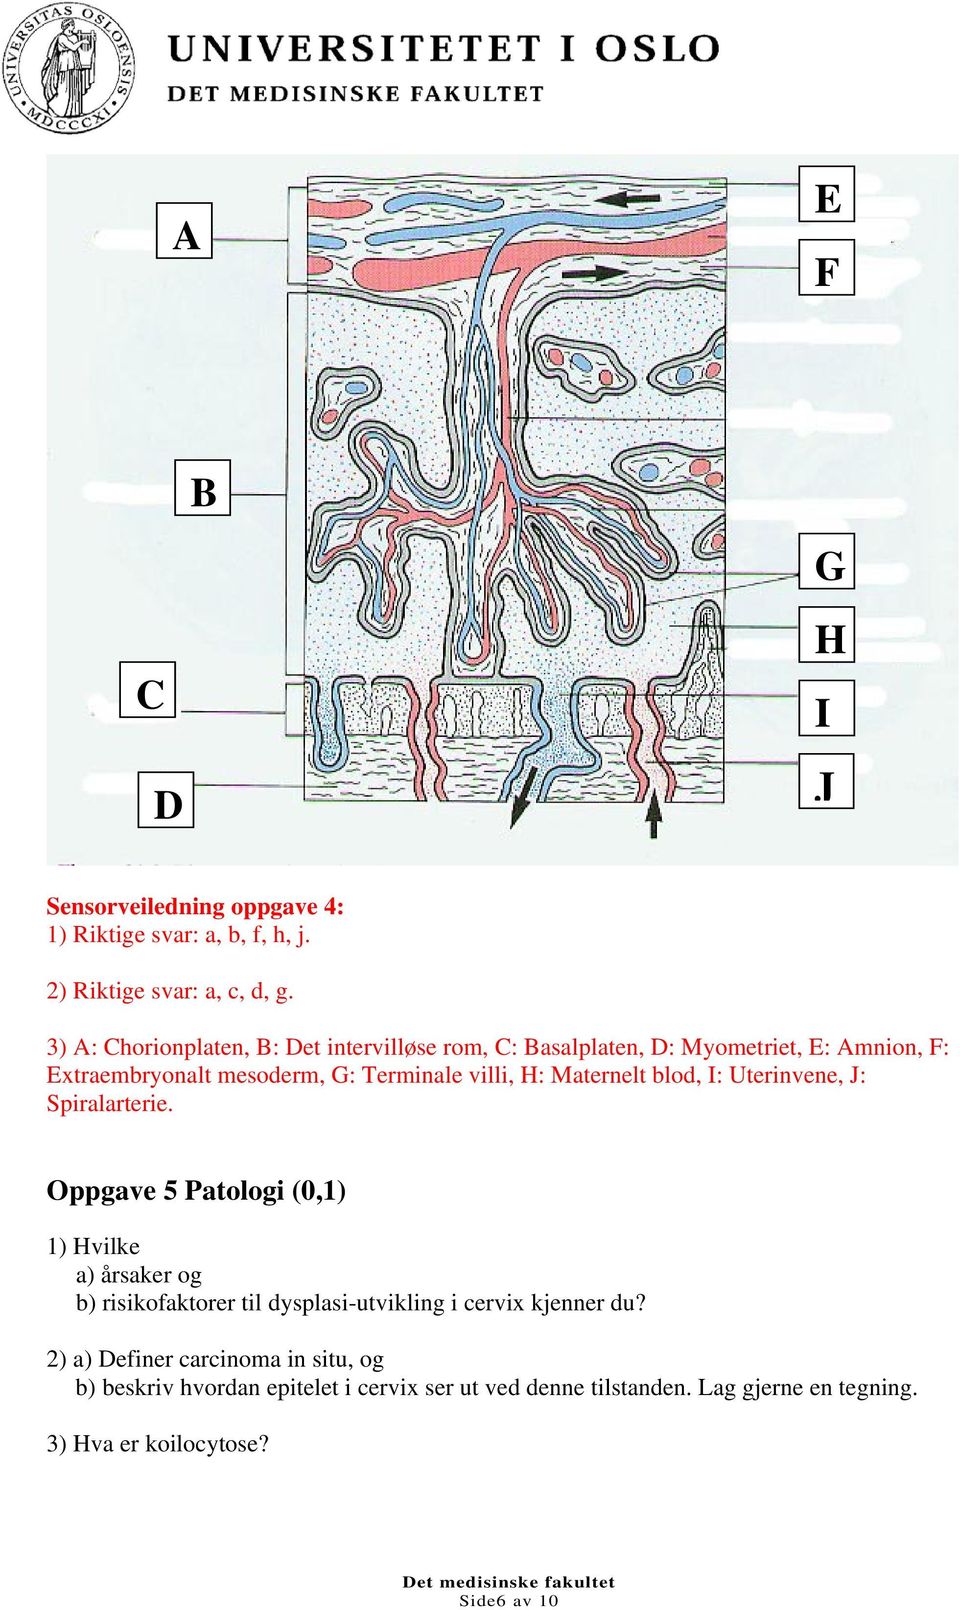 Maternelt blod, I: Uterinvene, J: Spiralarterie.